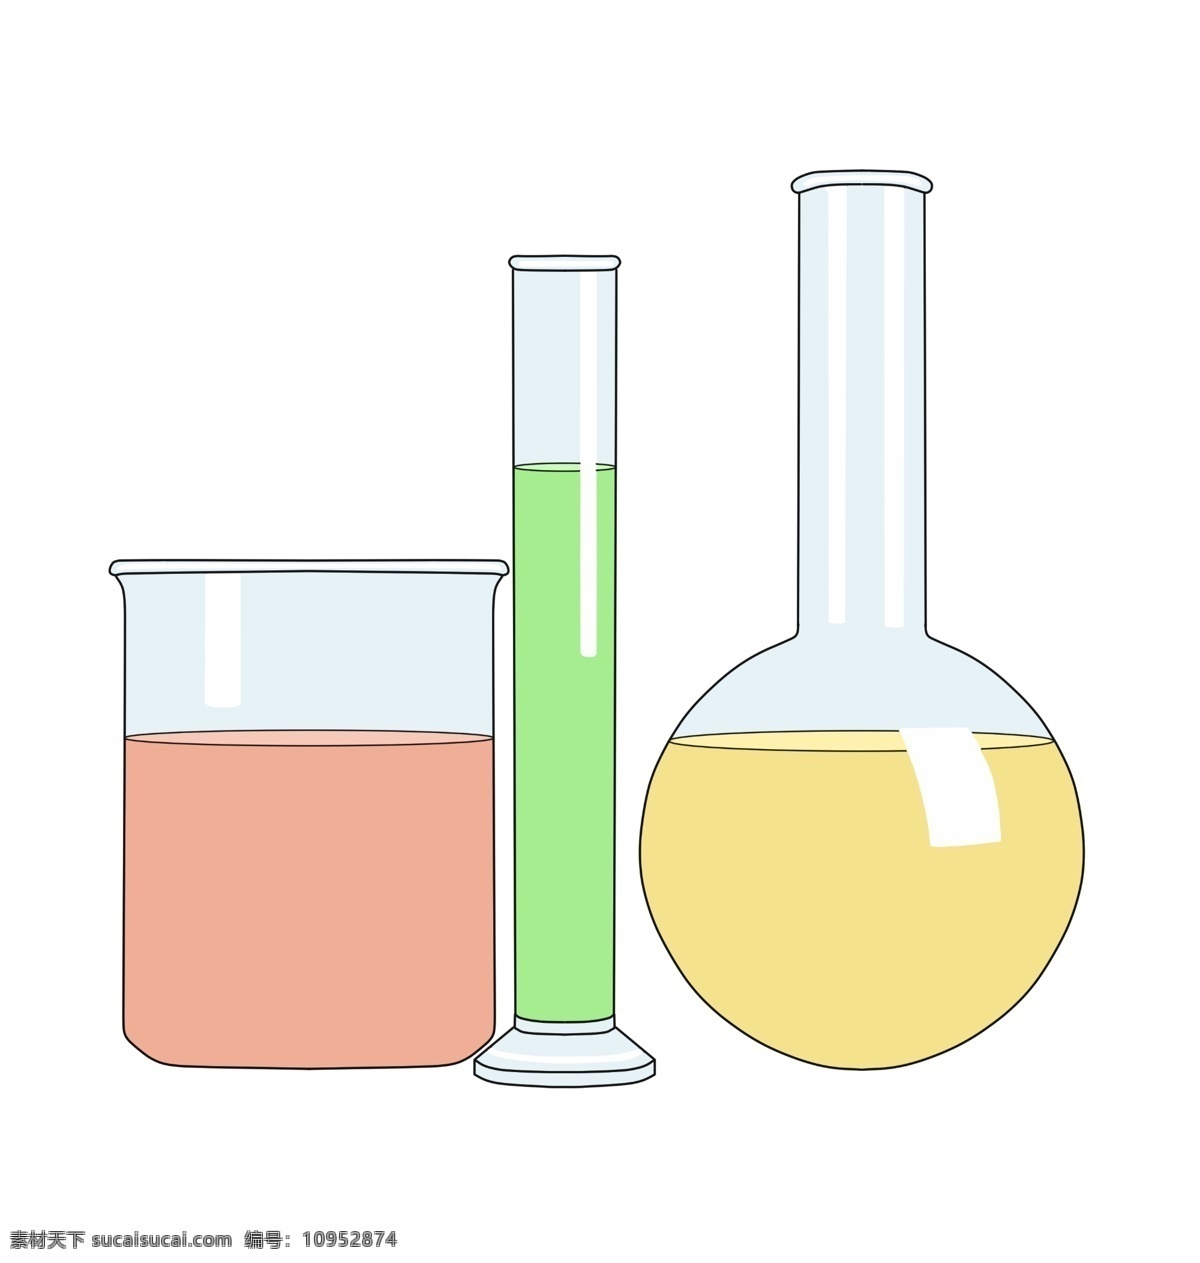 化学 玻璃器皿 插图 容器 瓶子 玻璃瓶子 玻璃容器 绿色液体 黄色液体 化学药物